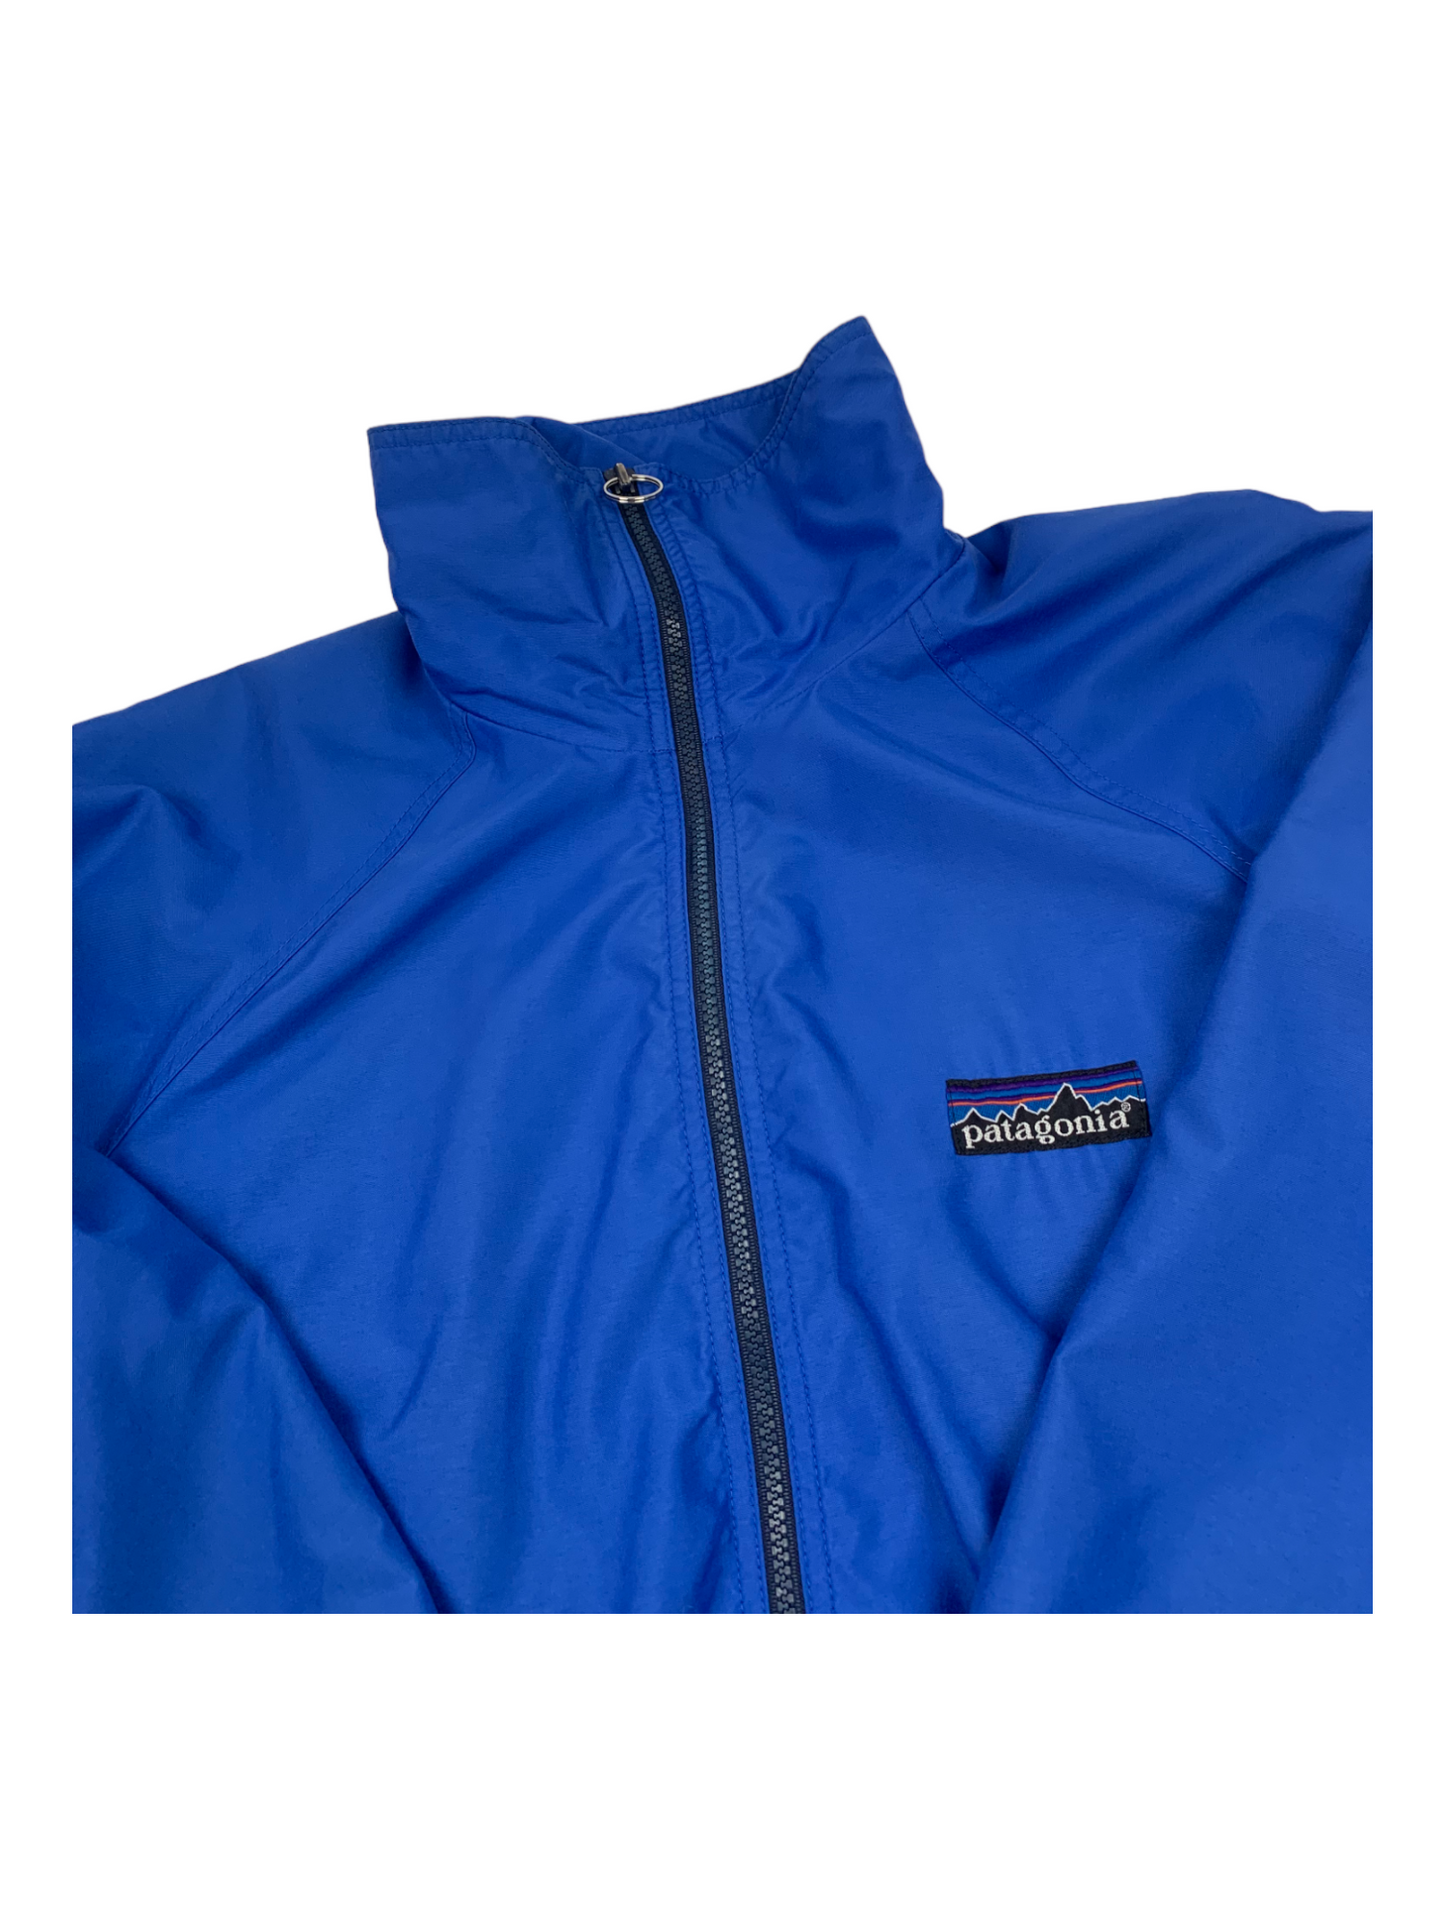 Blue Patagonia Jacket